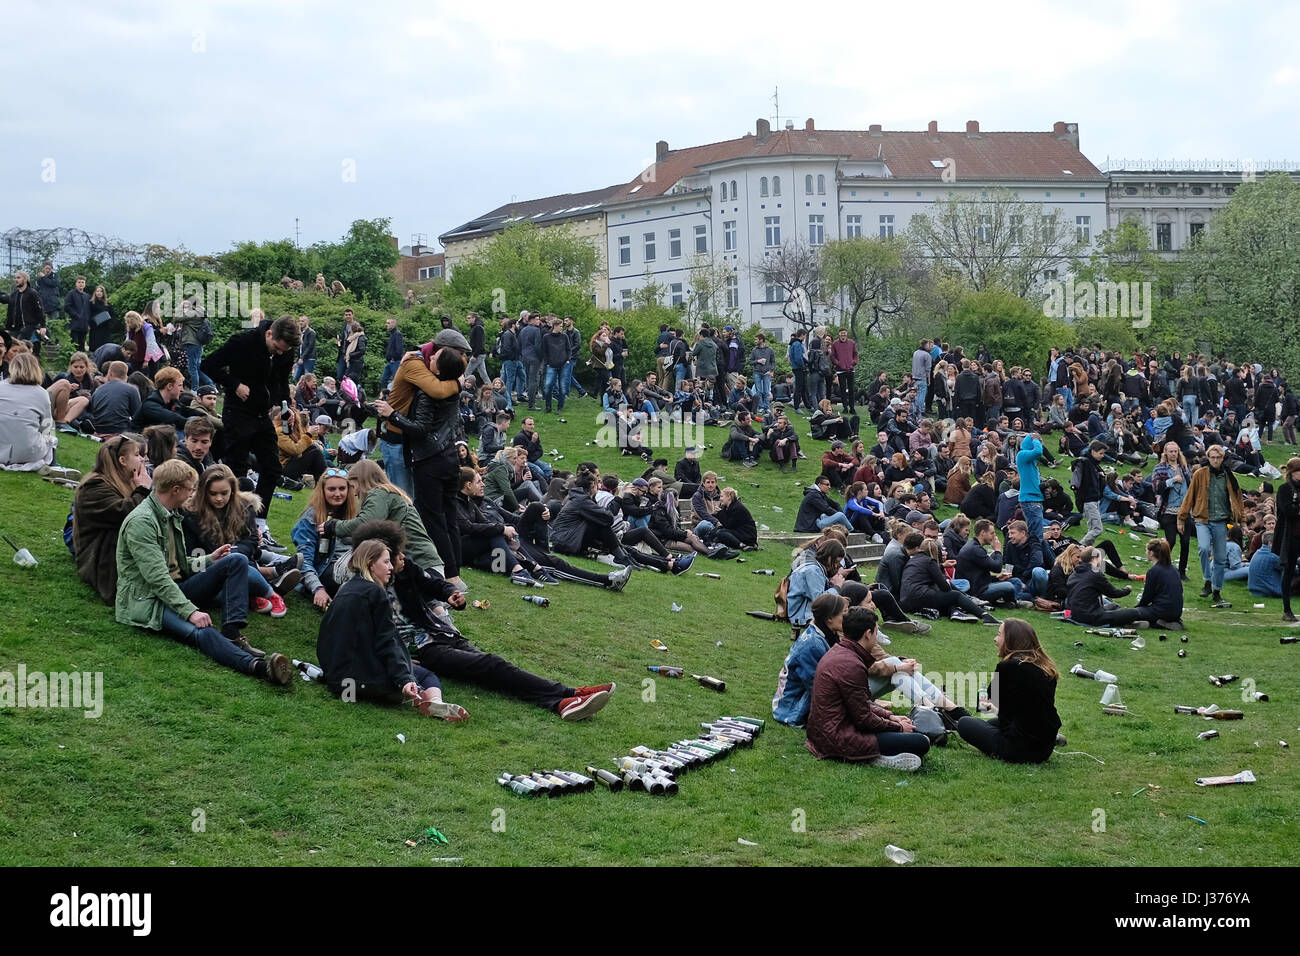 Beaucoup de gens au parc bondé (Goerlitzer Park) au cours de la fête du travail / jour de mai à Berlin, Kreuzberg. 1.Mai à Berlin. Banque D'Images